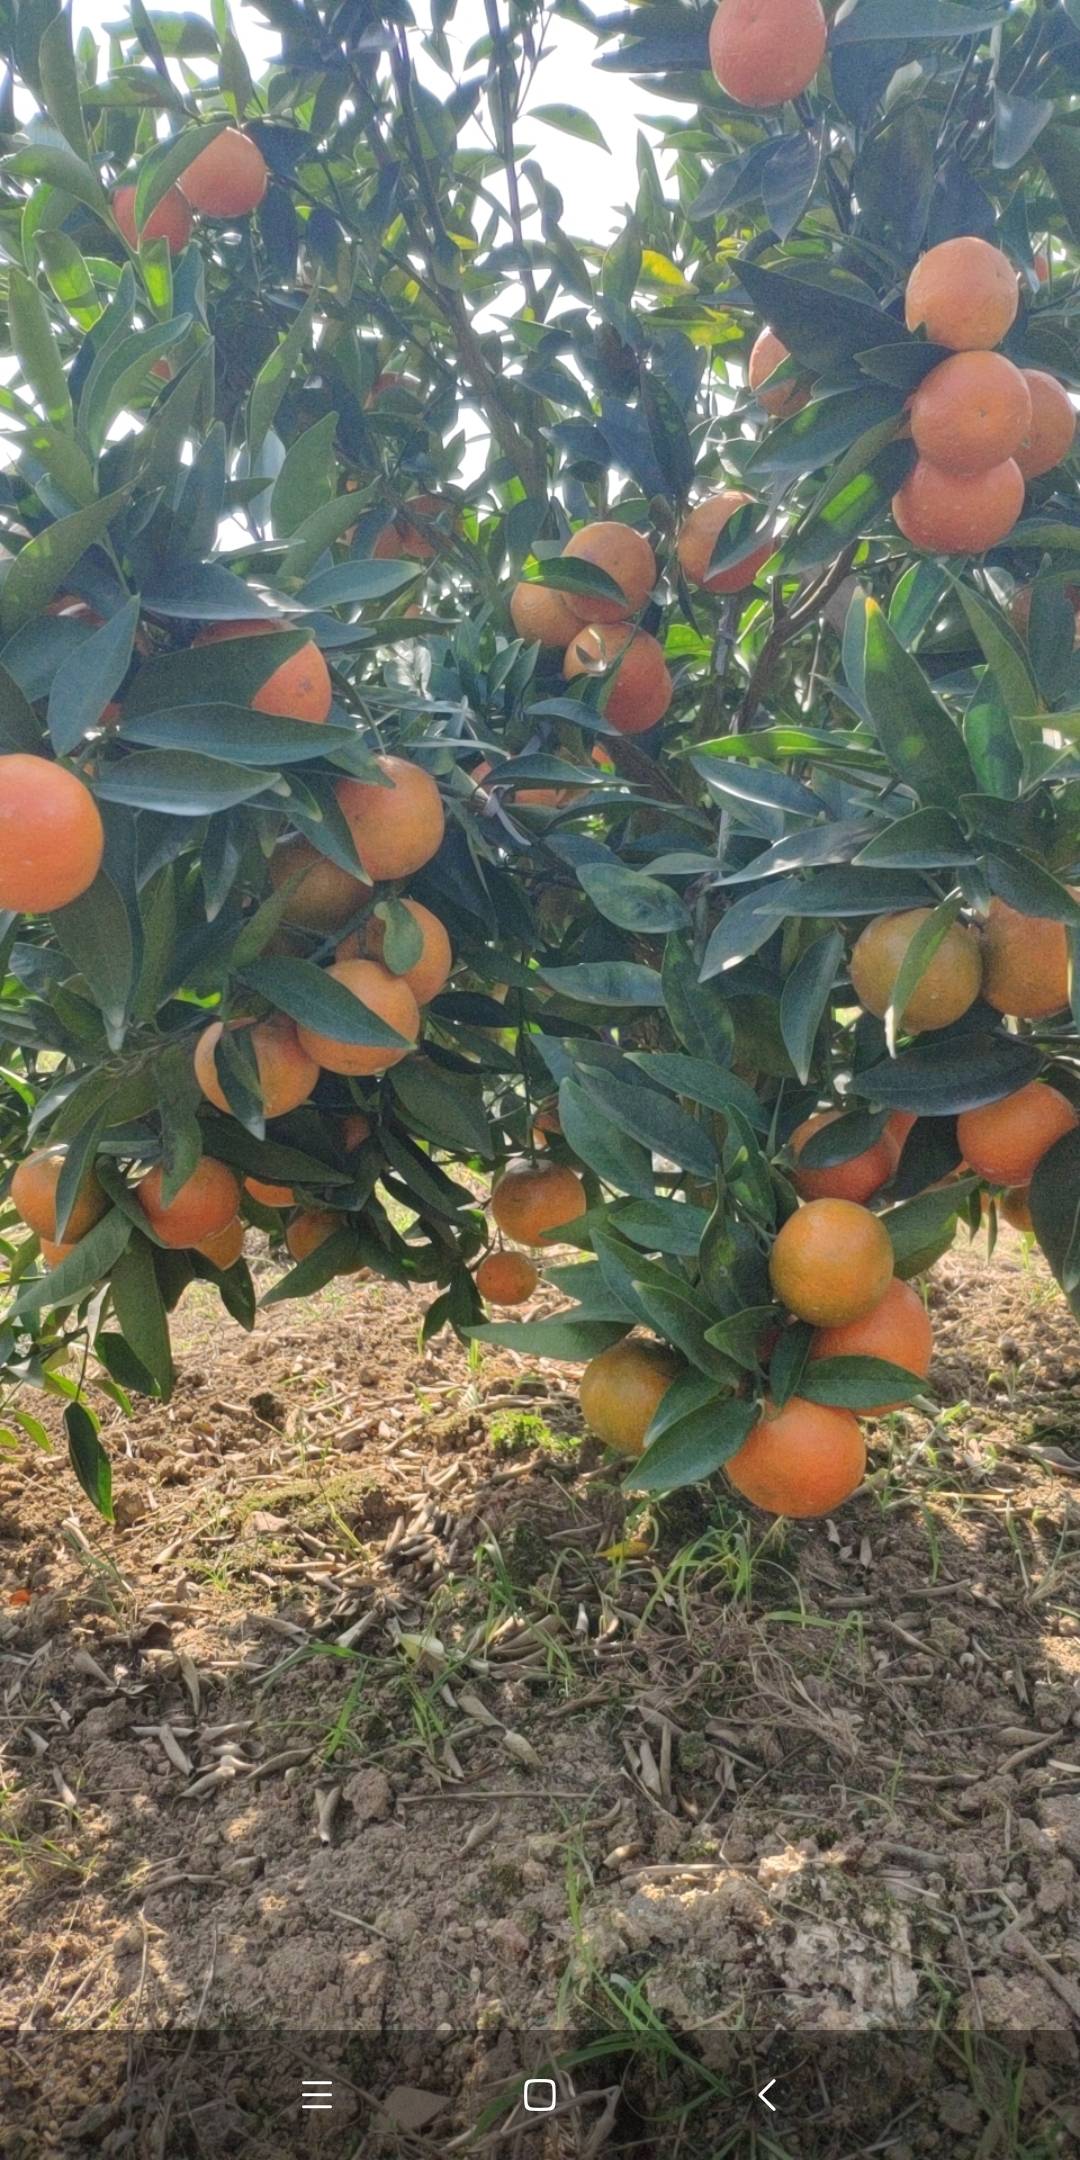 广西象州县  东方红  皇帝柑  清香橘  已经上市  需要下来找货的 老板可以联系我  代办阿成 电话15878275878